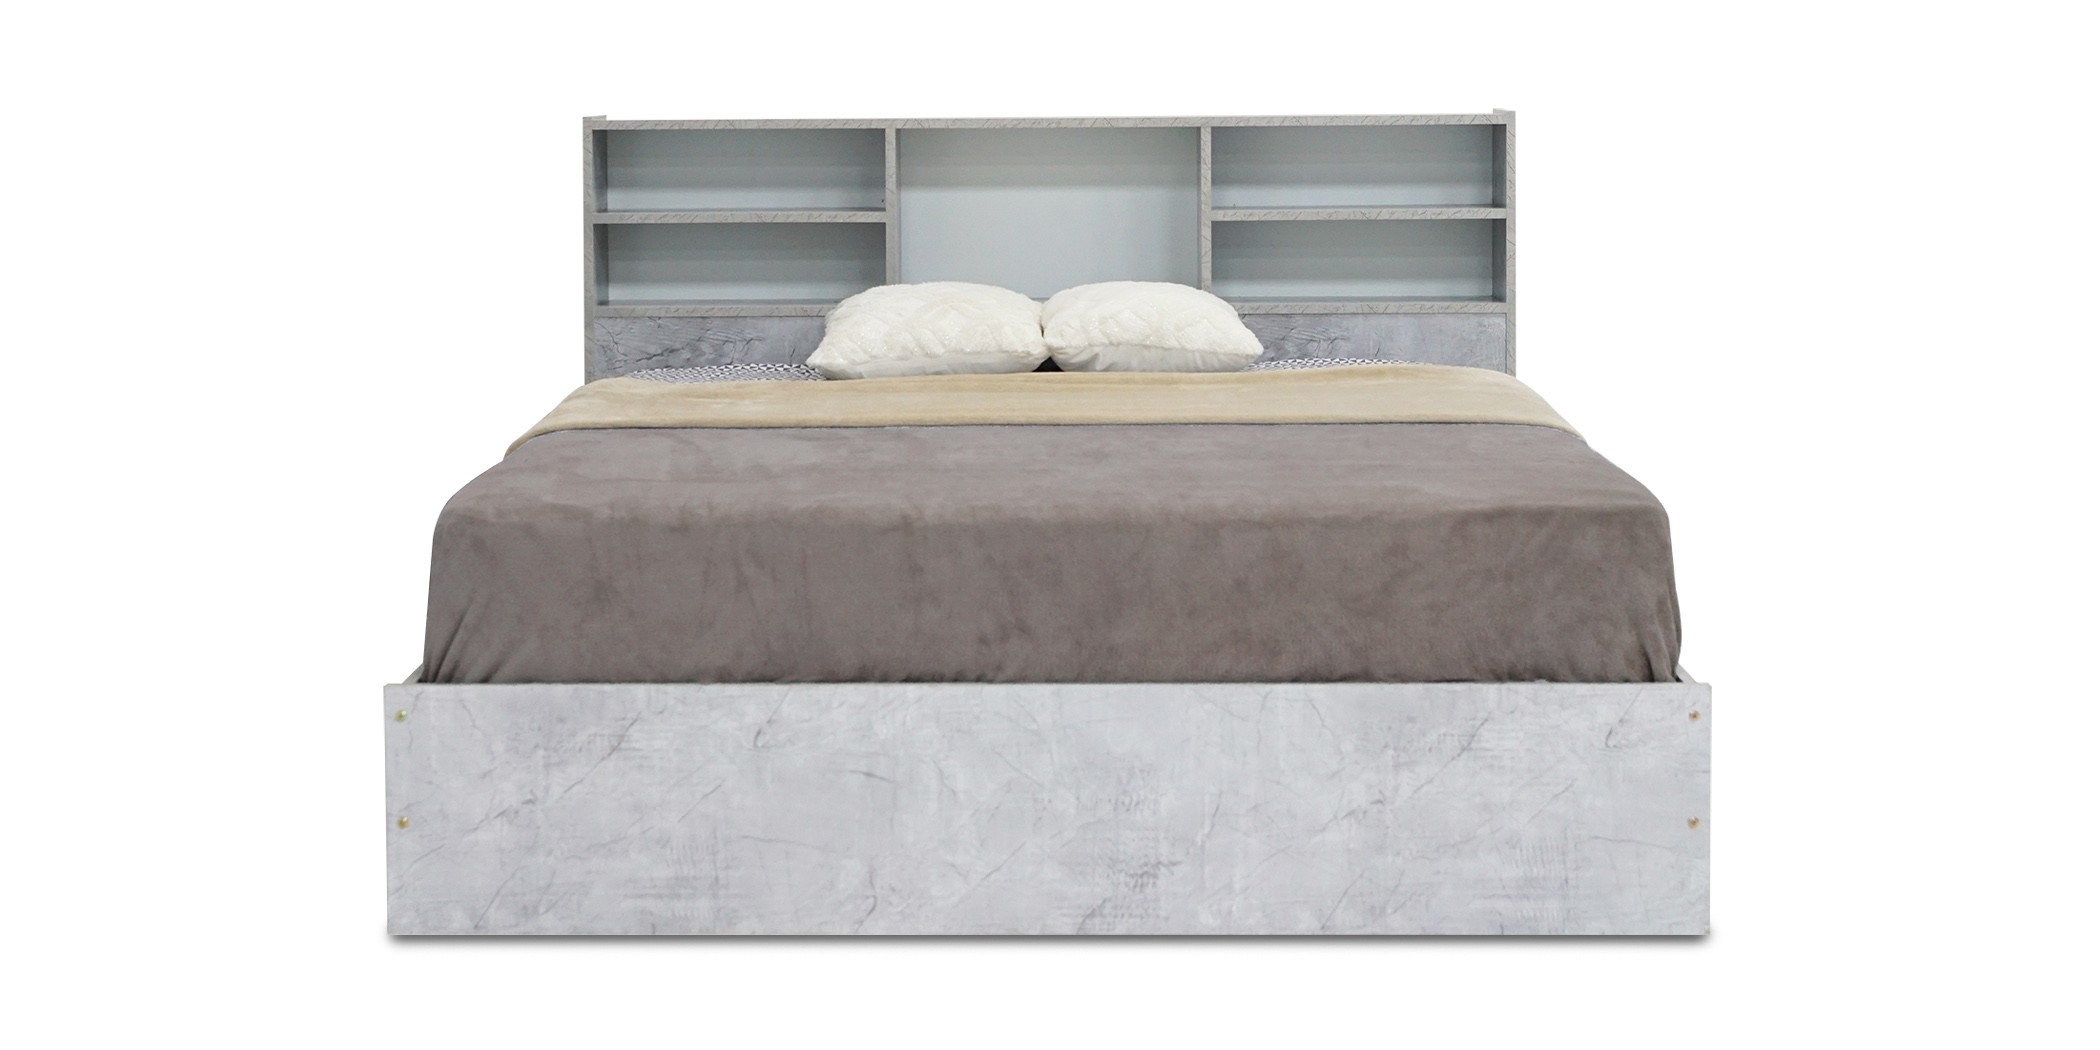 Rio Bed 150x190 cm MDF Grey